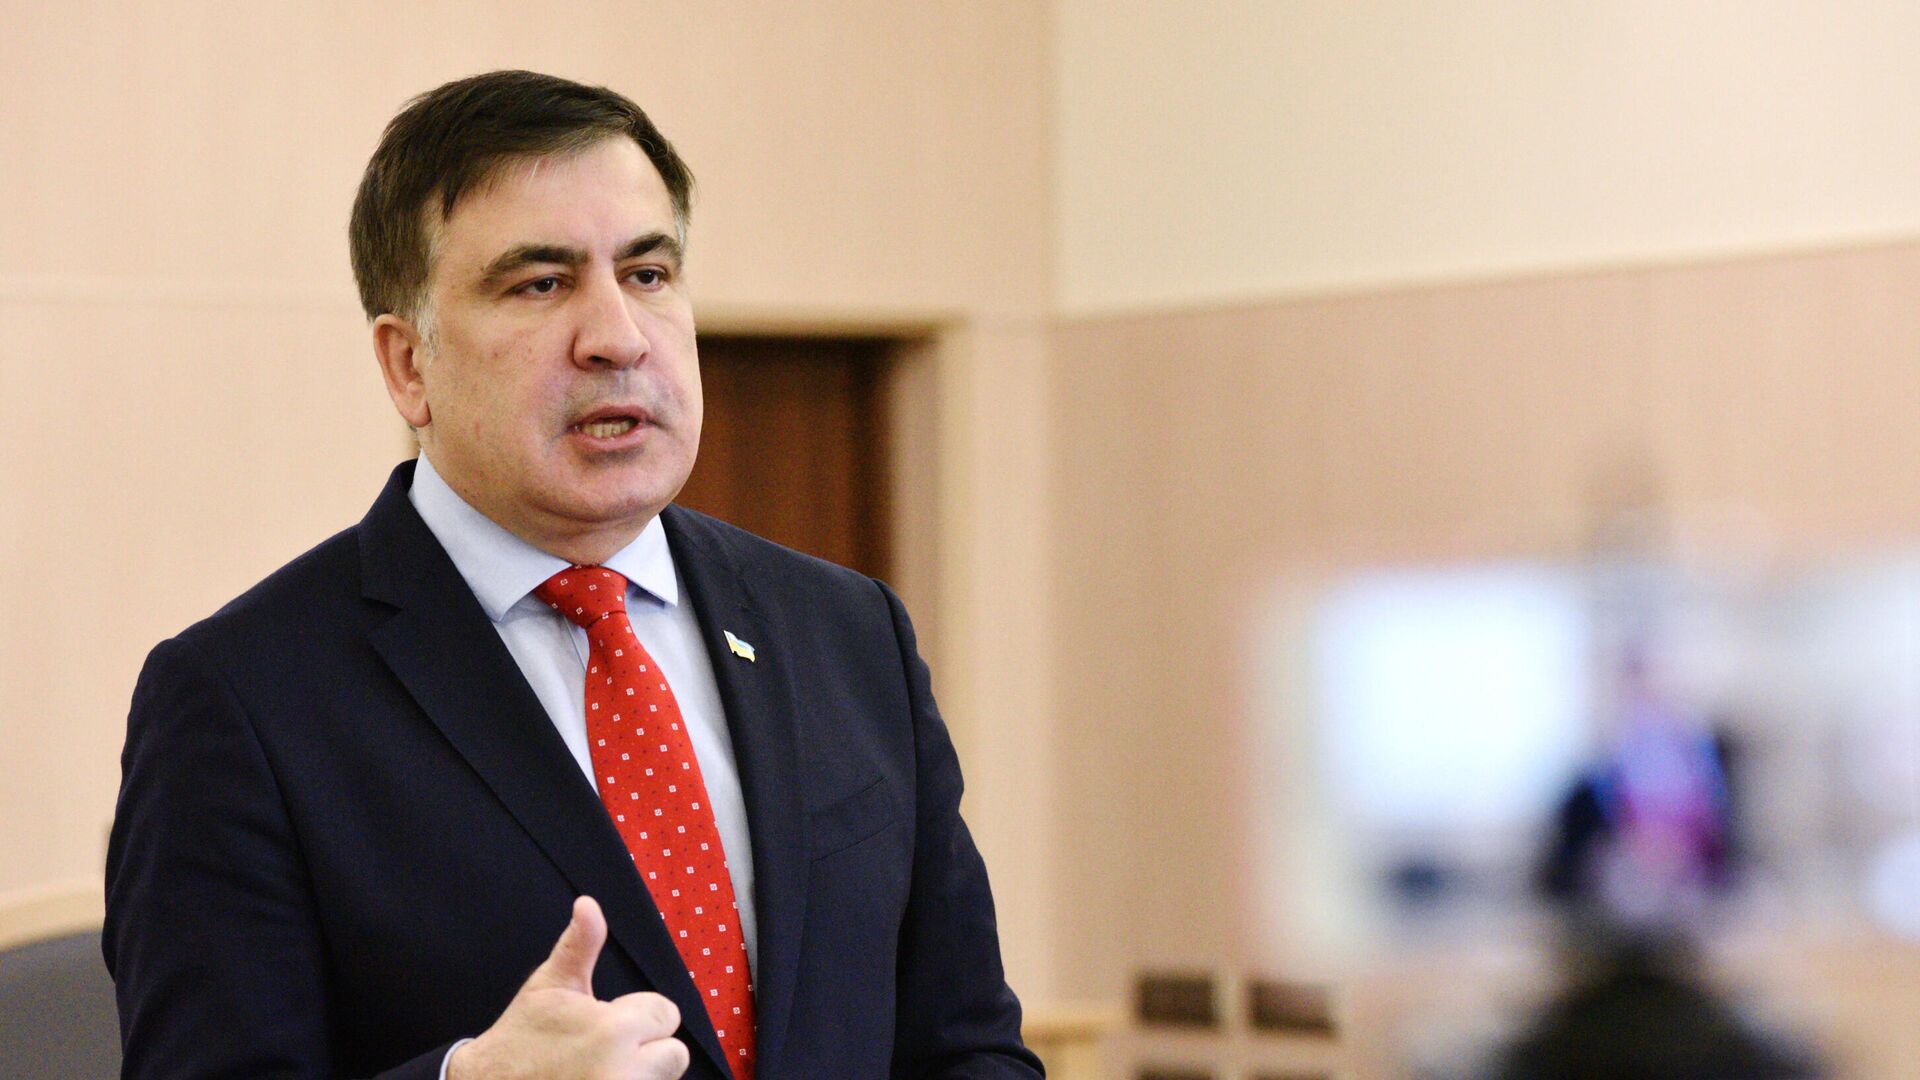 Экс-президент Грузии, бывший губернатор Одесской области Михаил Саакашвили  - Sputnik Азербайджан, 1920, 29.11.2021